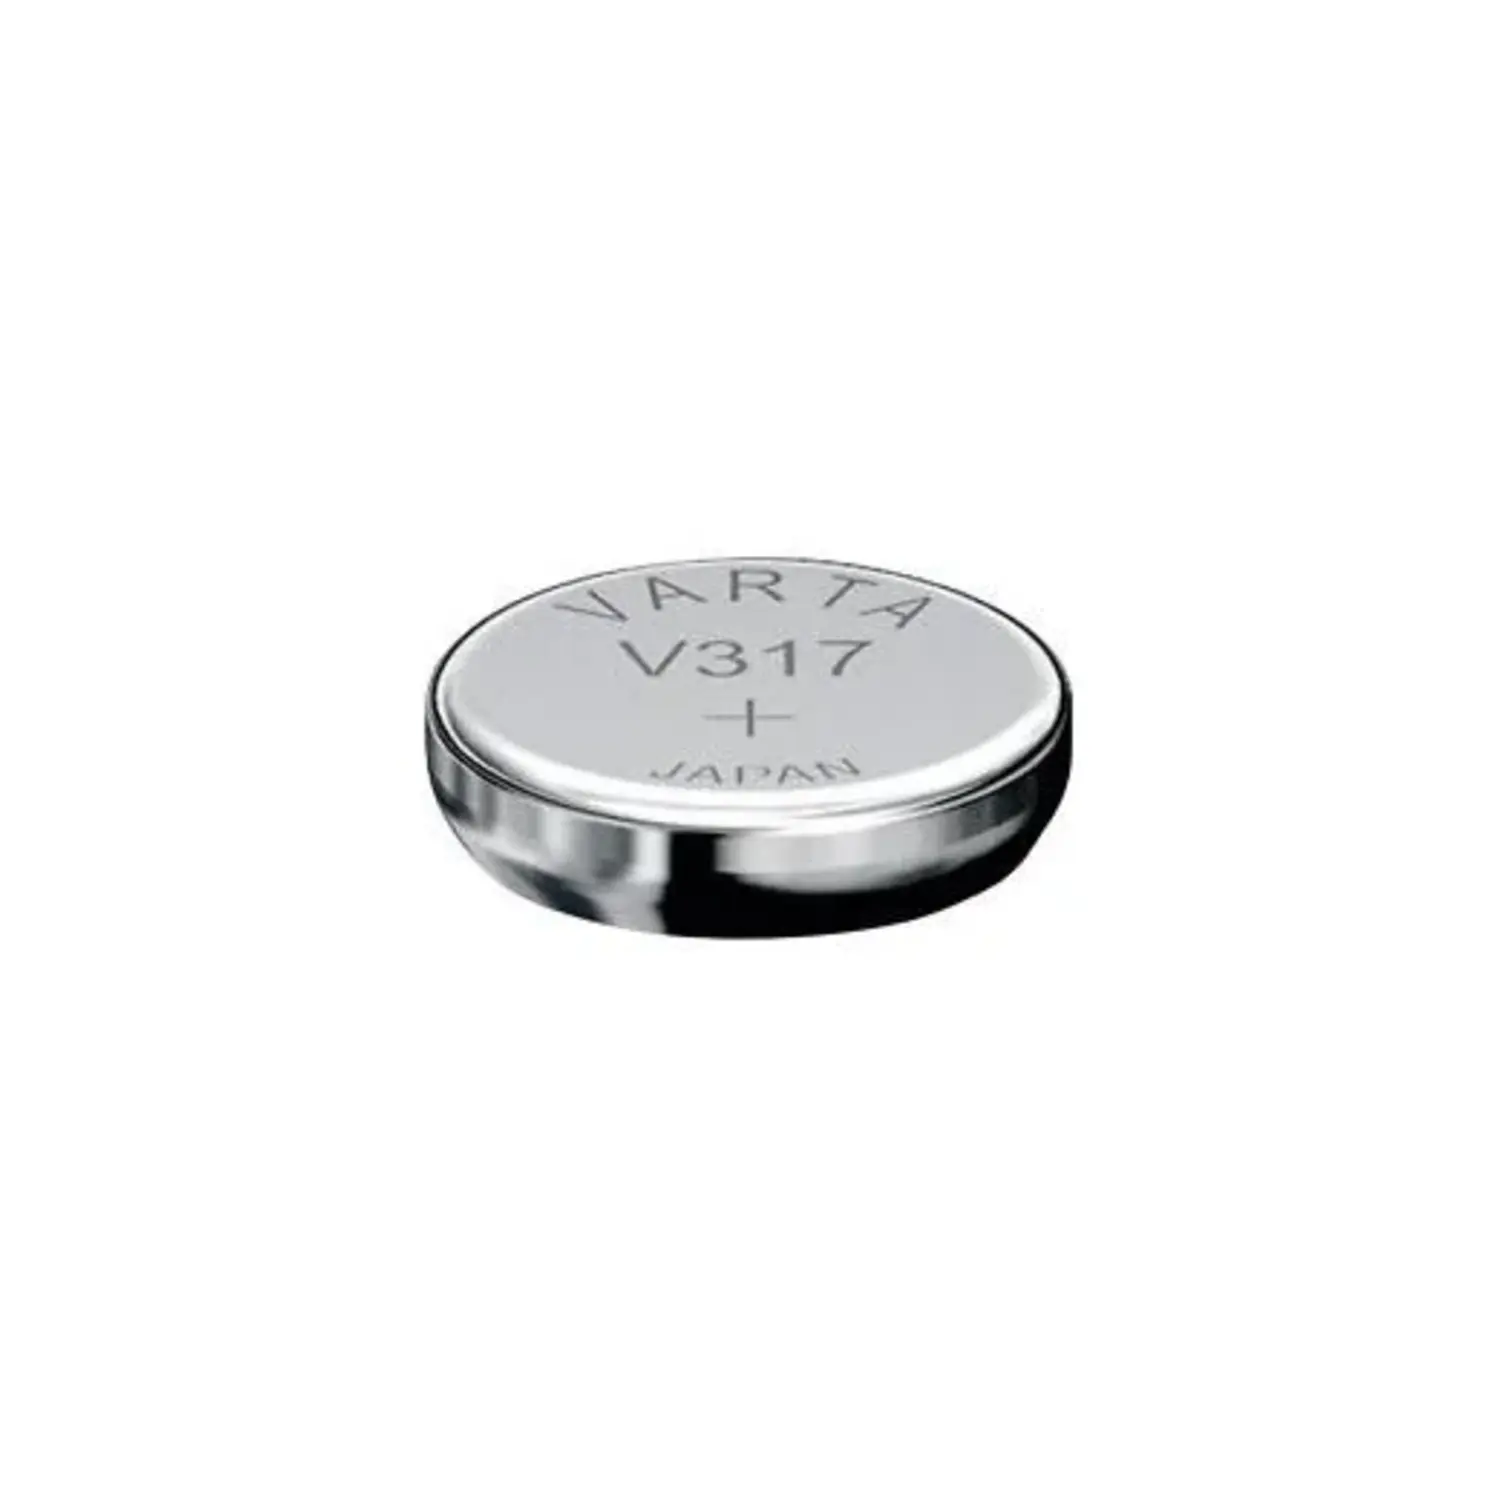 immagine del prodotto batteria a bottone orologio v317 1,55volt